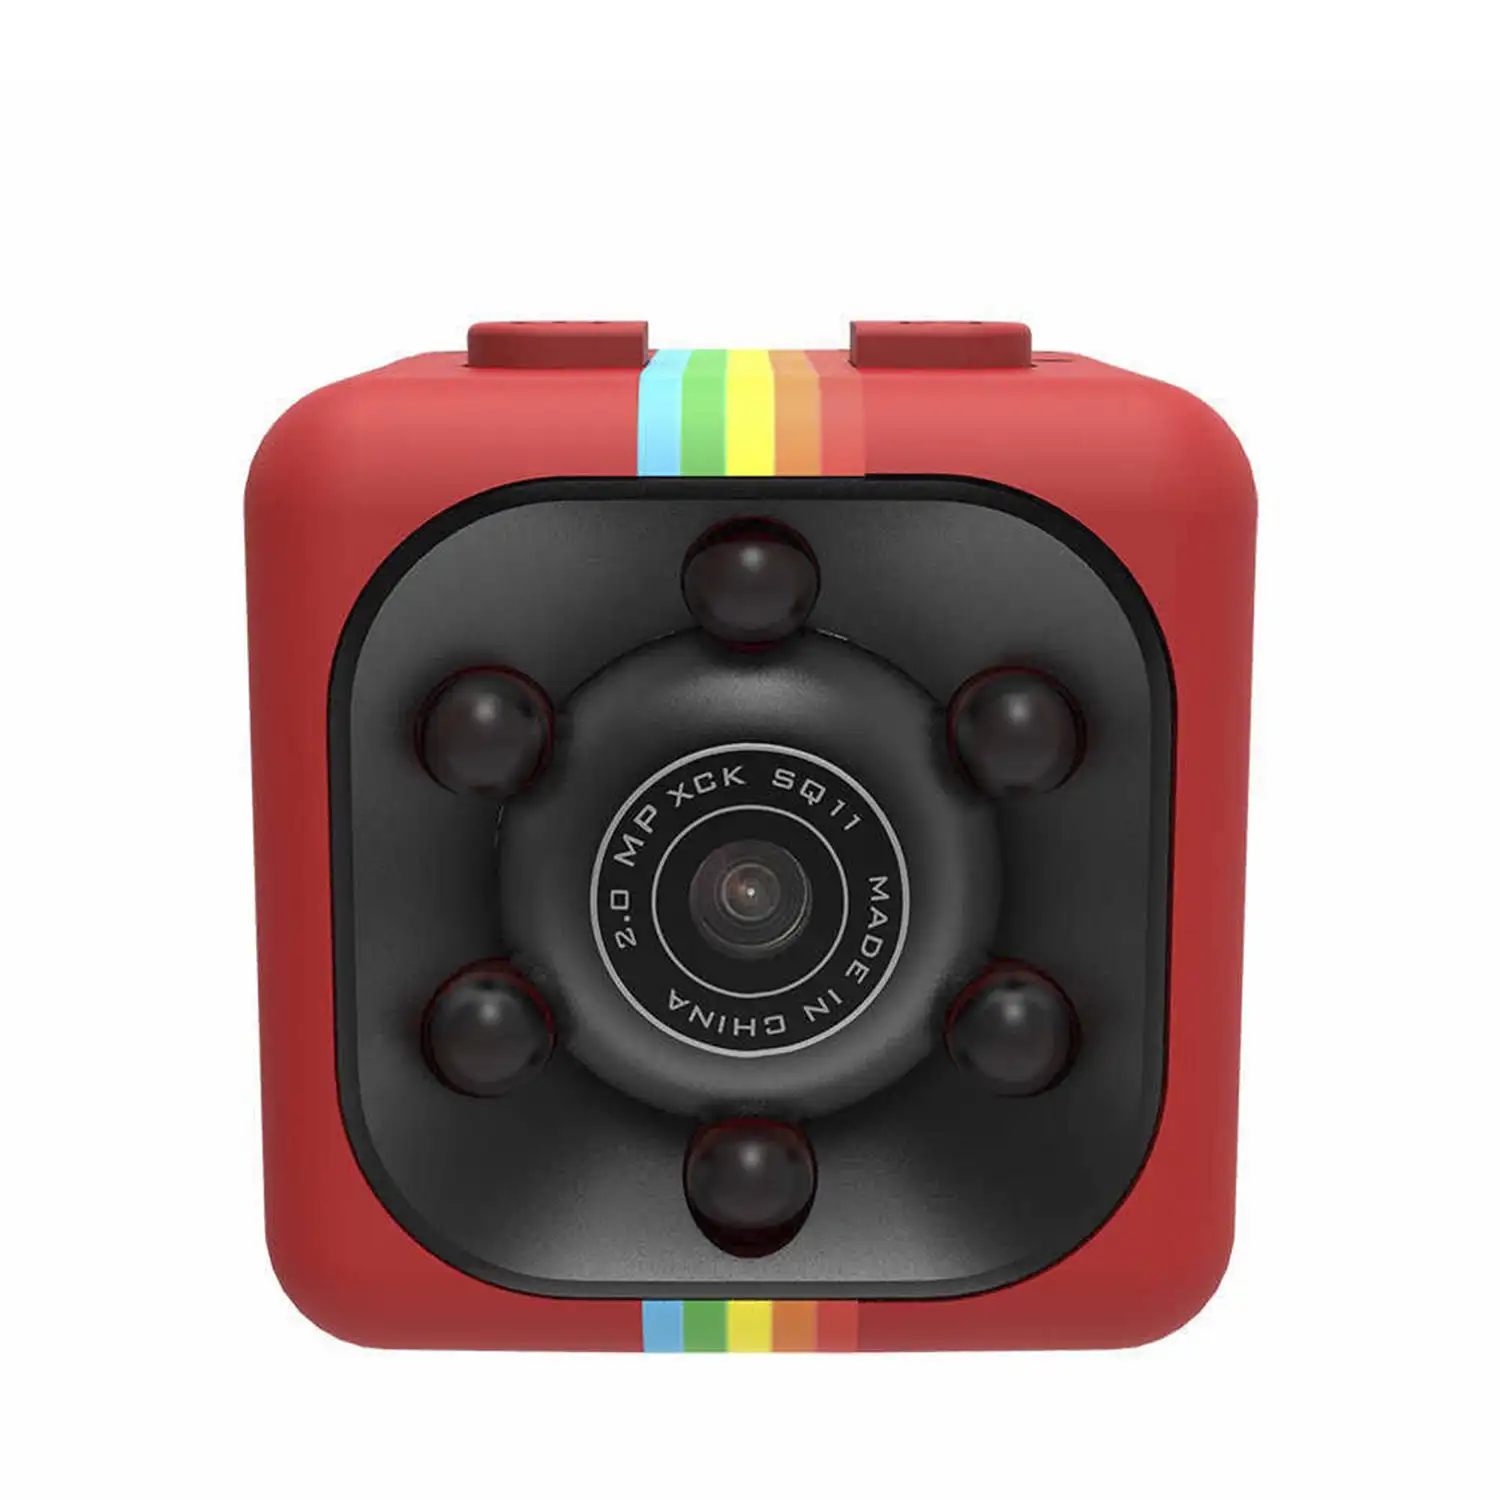 Micro cámara SQ11 Full HD 1080 con visión nocturna y sensor de movimiento